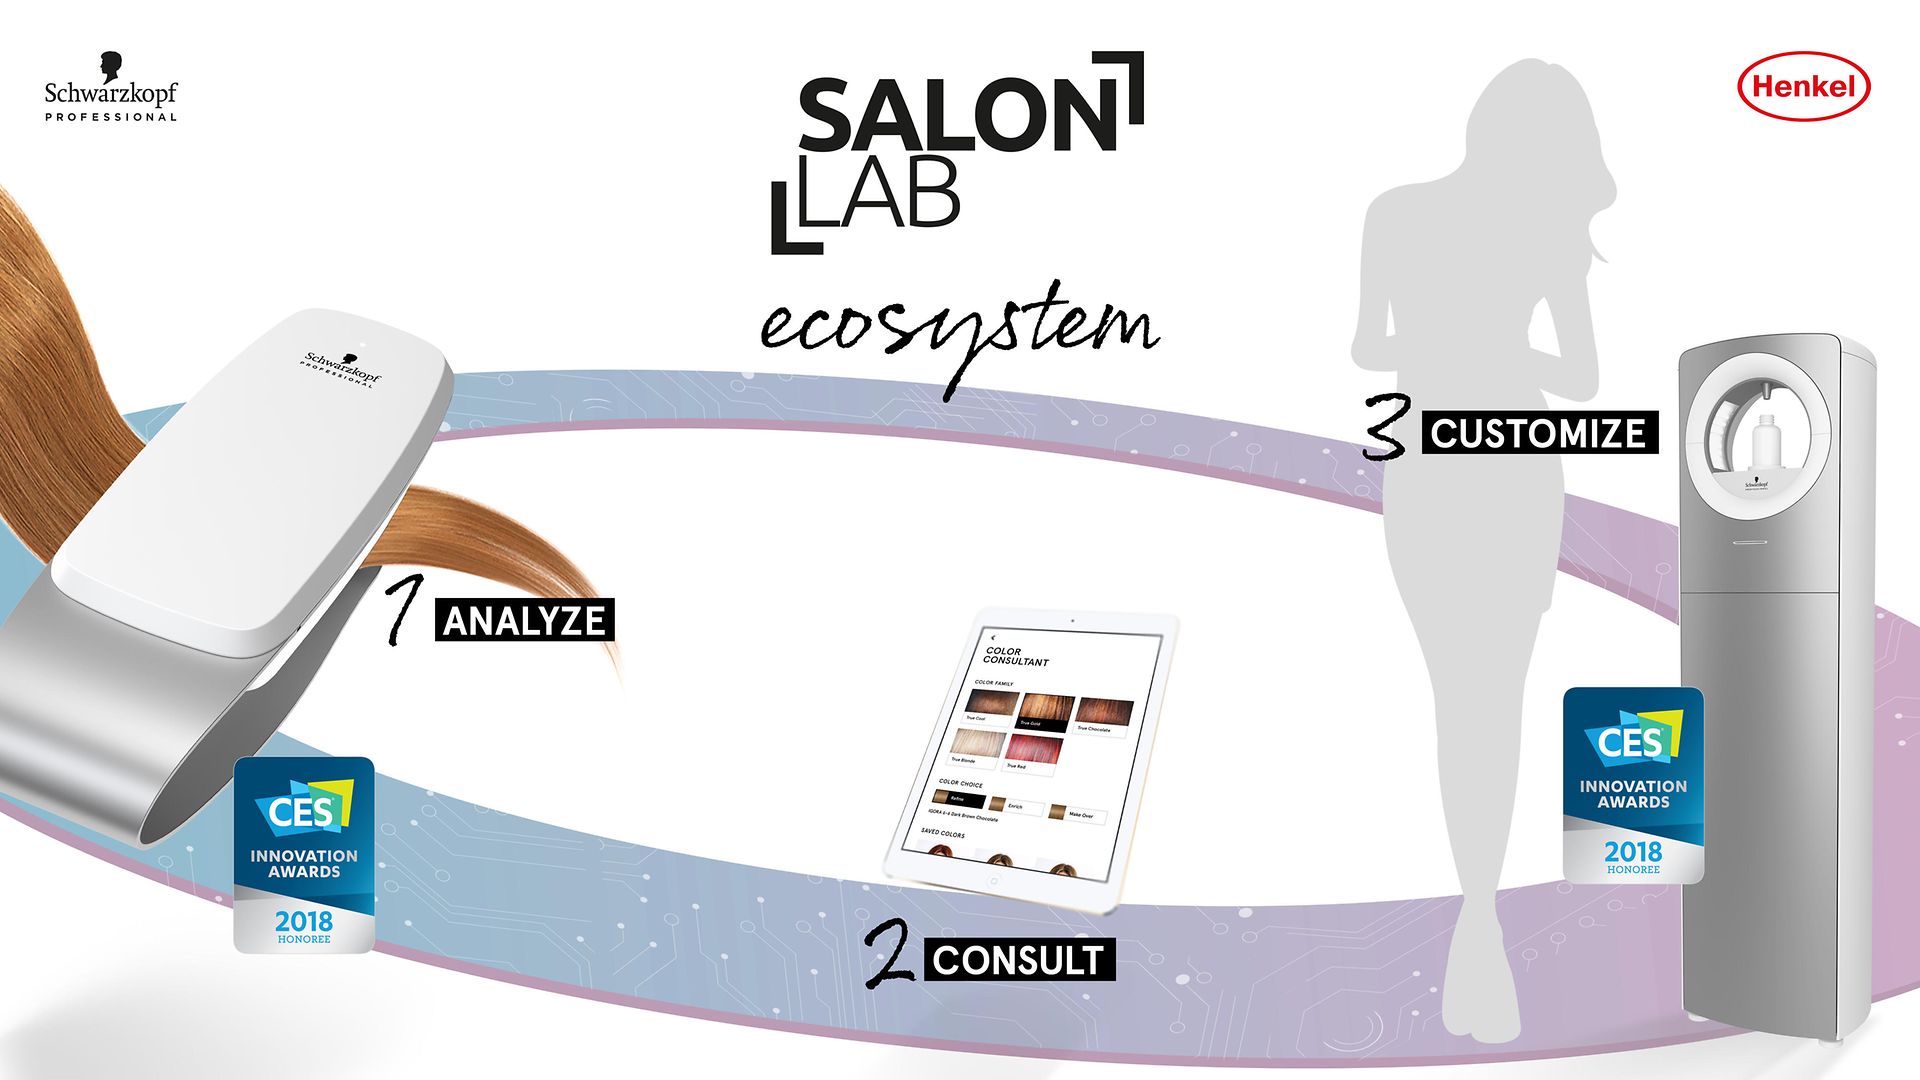 In drei Schritten werden die Haare analysiert, die Ergebnisse ausgewertet und die passenden Produkte individuell gemischt.